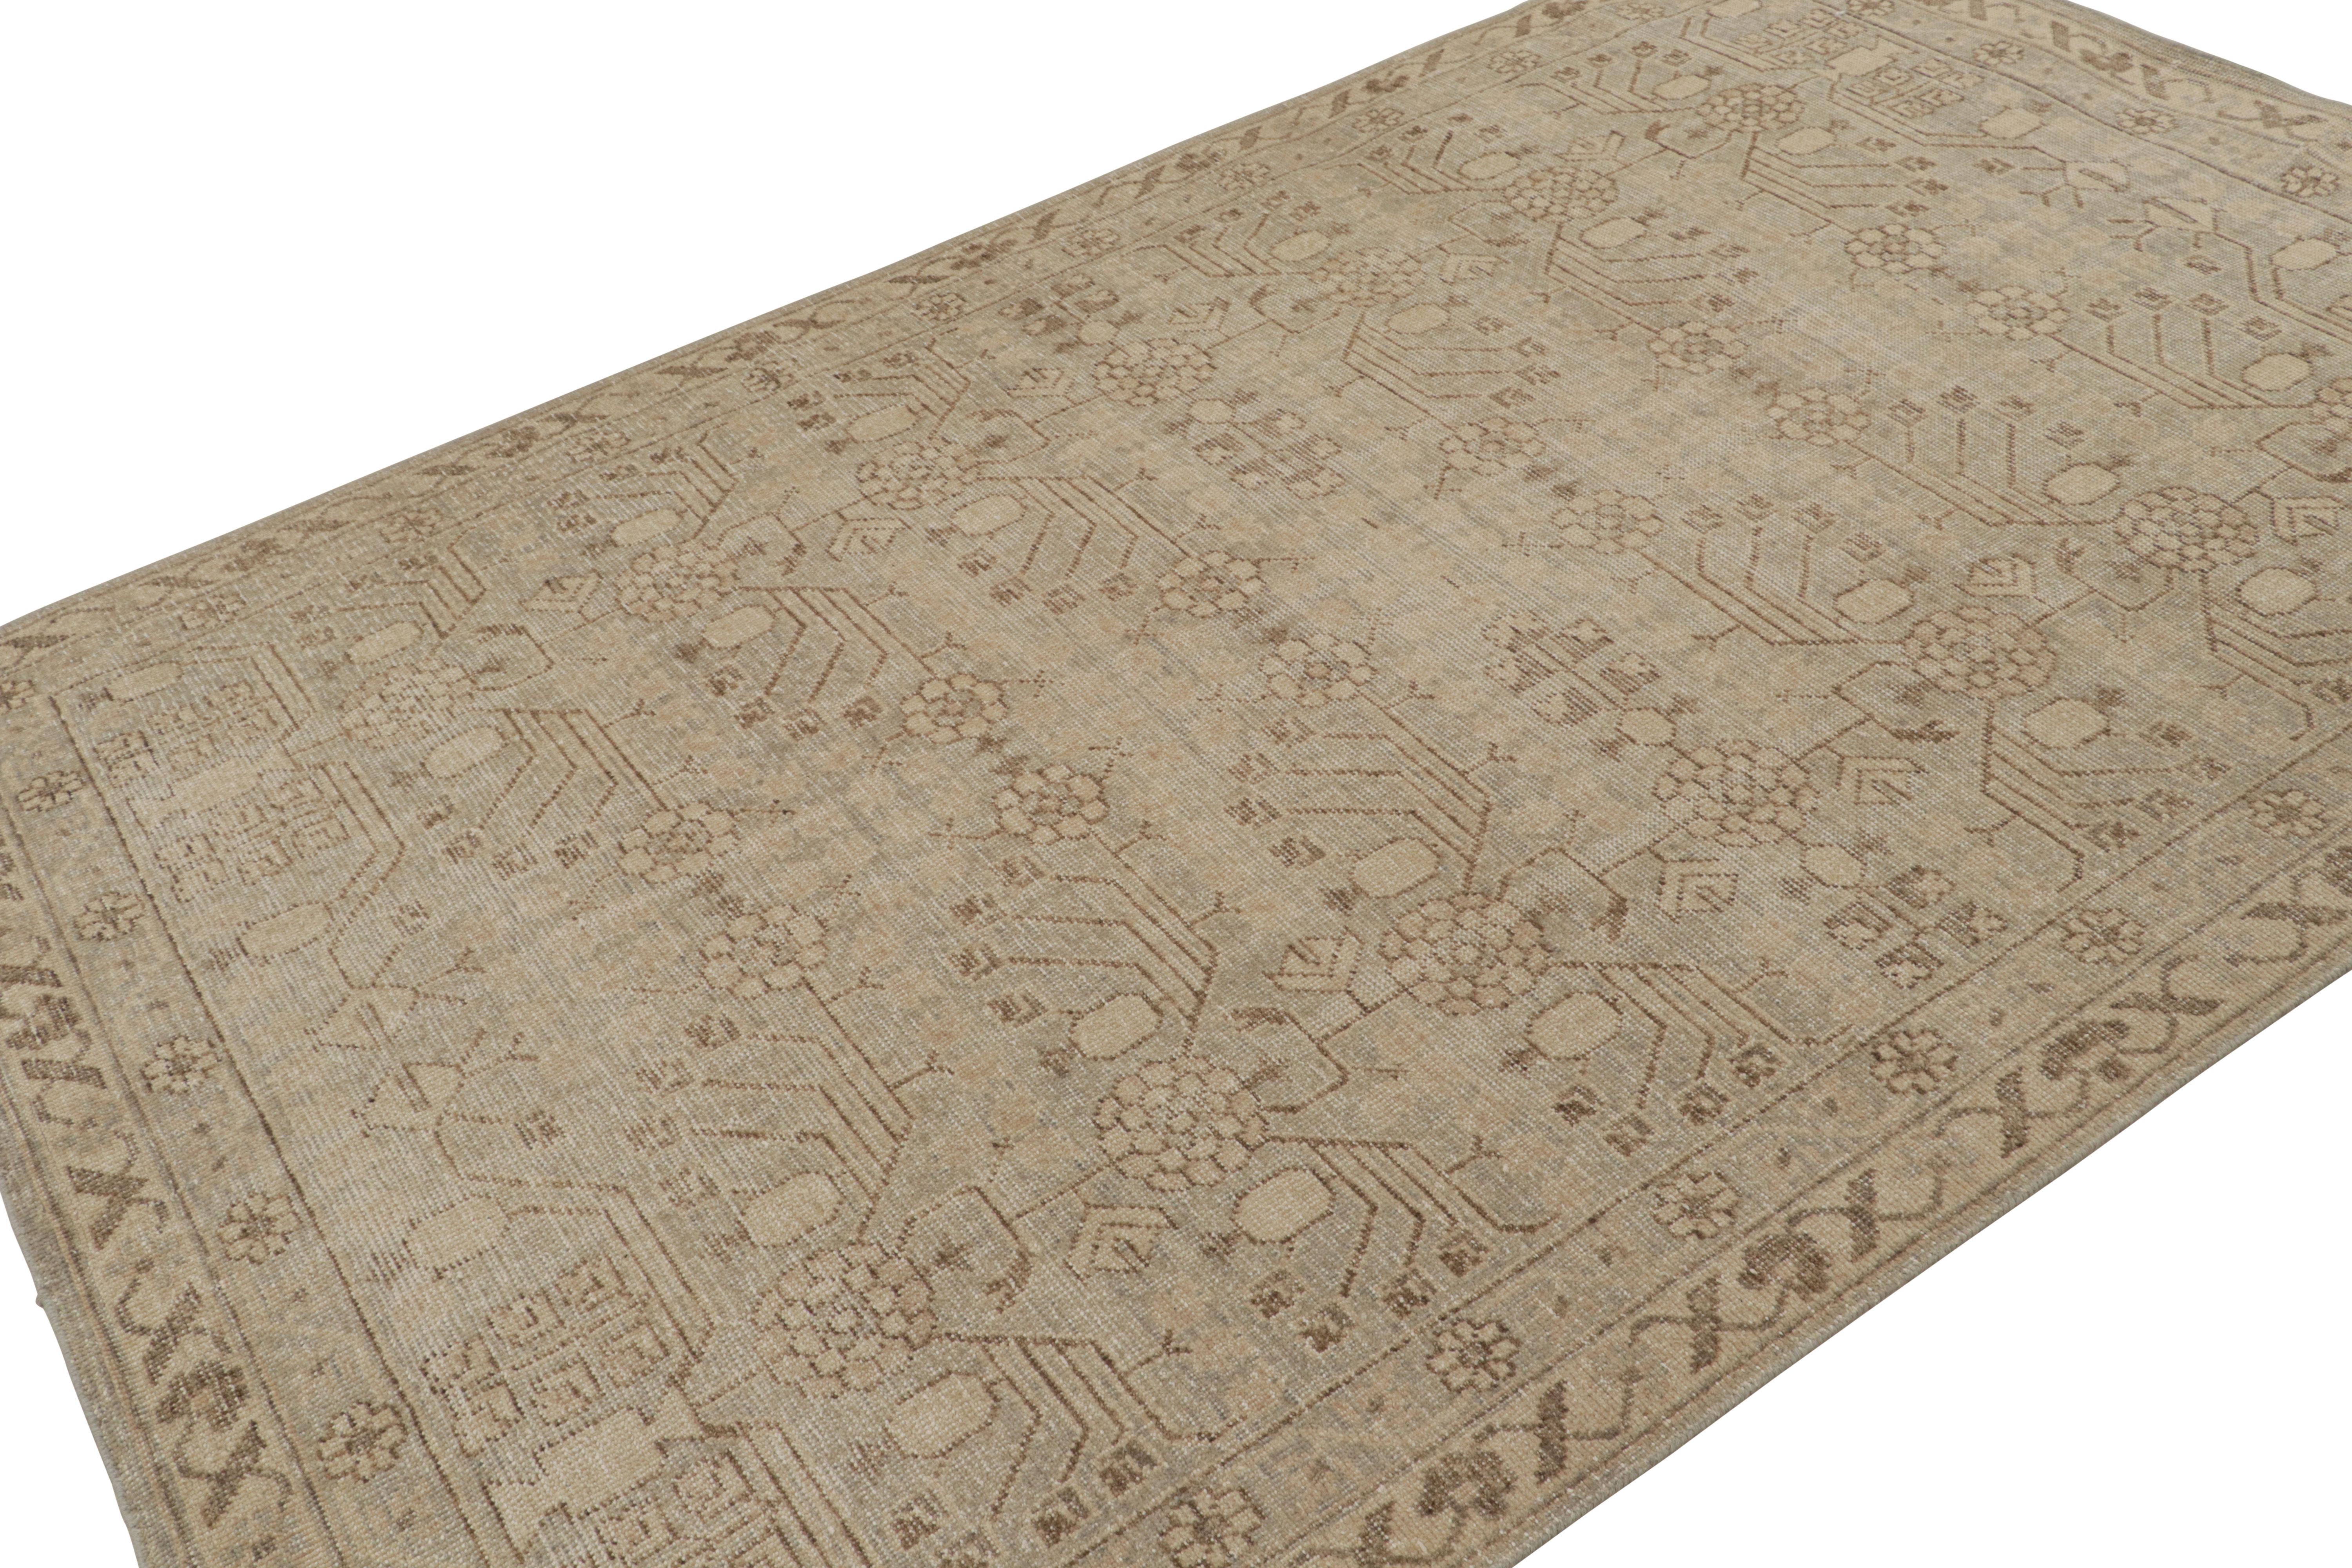 Noué à la main en laine, ce tapis 6x9 de la collection 'Homage' s'inspire des tapis anciens Khotan Samarkand aux motifs de grenades. 

Sur le Design/One ; 

Issu de notre collection 